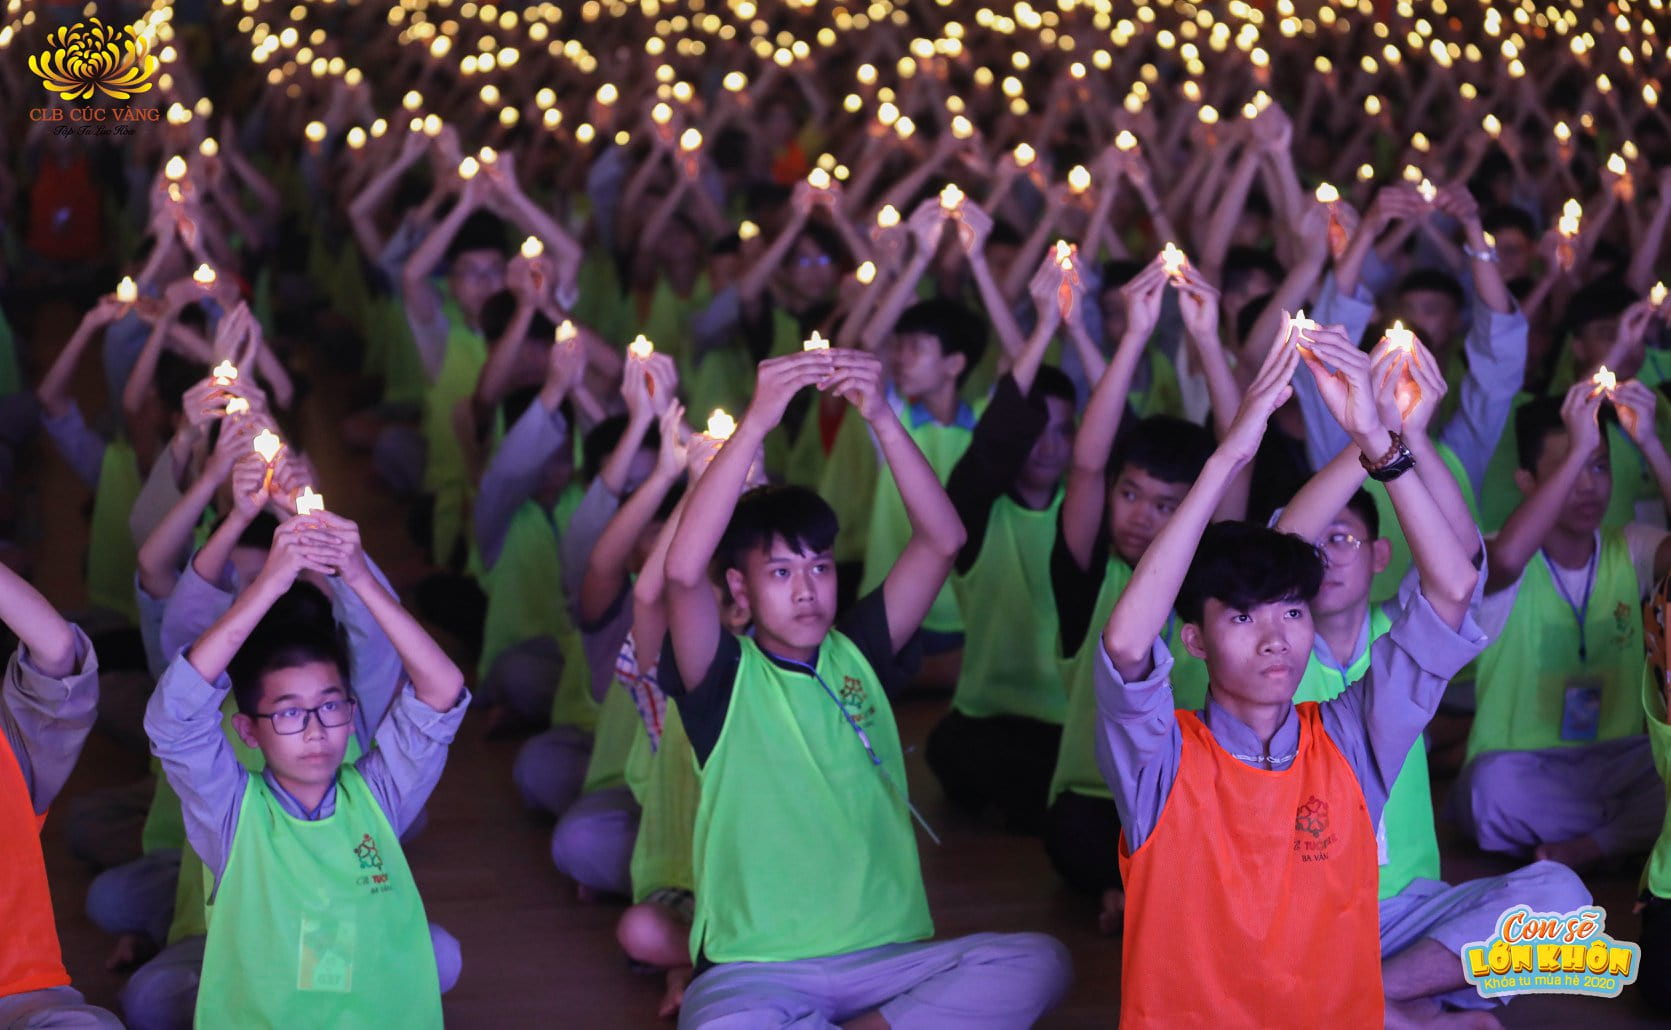 Hơn 3000 khóa sinh cùng thắp sáng tâm tri ân tưởng nhớ các Anh hùng liệt sĩ tại khóa tu mùa hè lần I (2020) chùa Ba Vàng